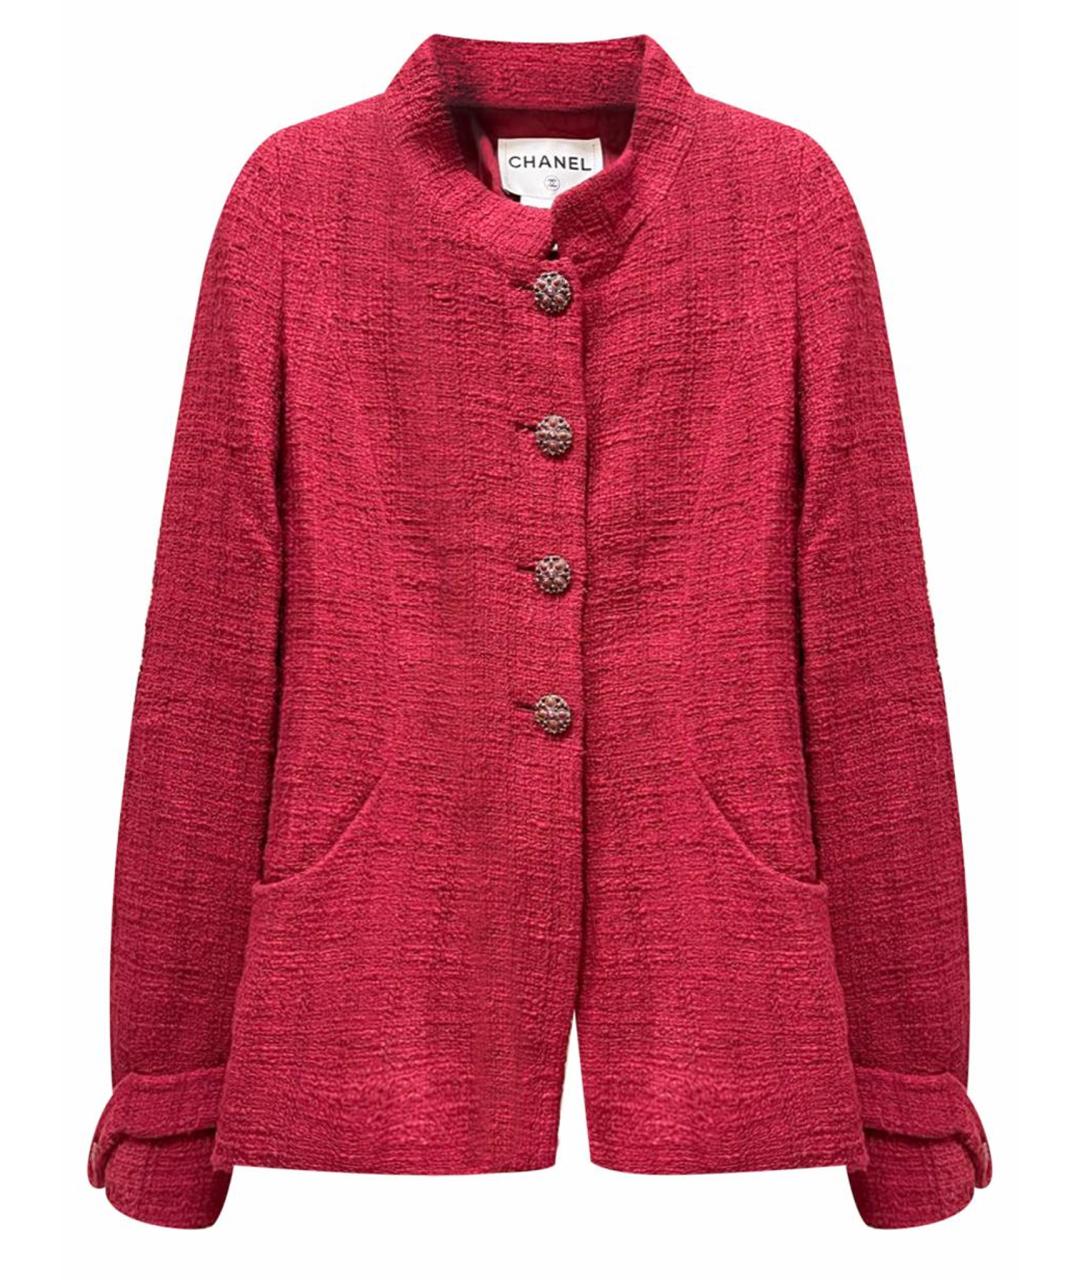 CHANEL PRE-OWNED Красный твидовый жакет/пиджак, фото 1